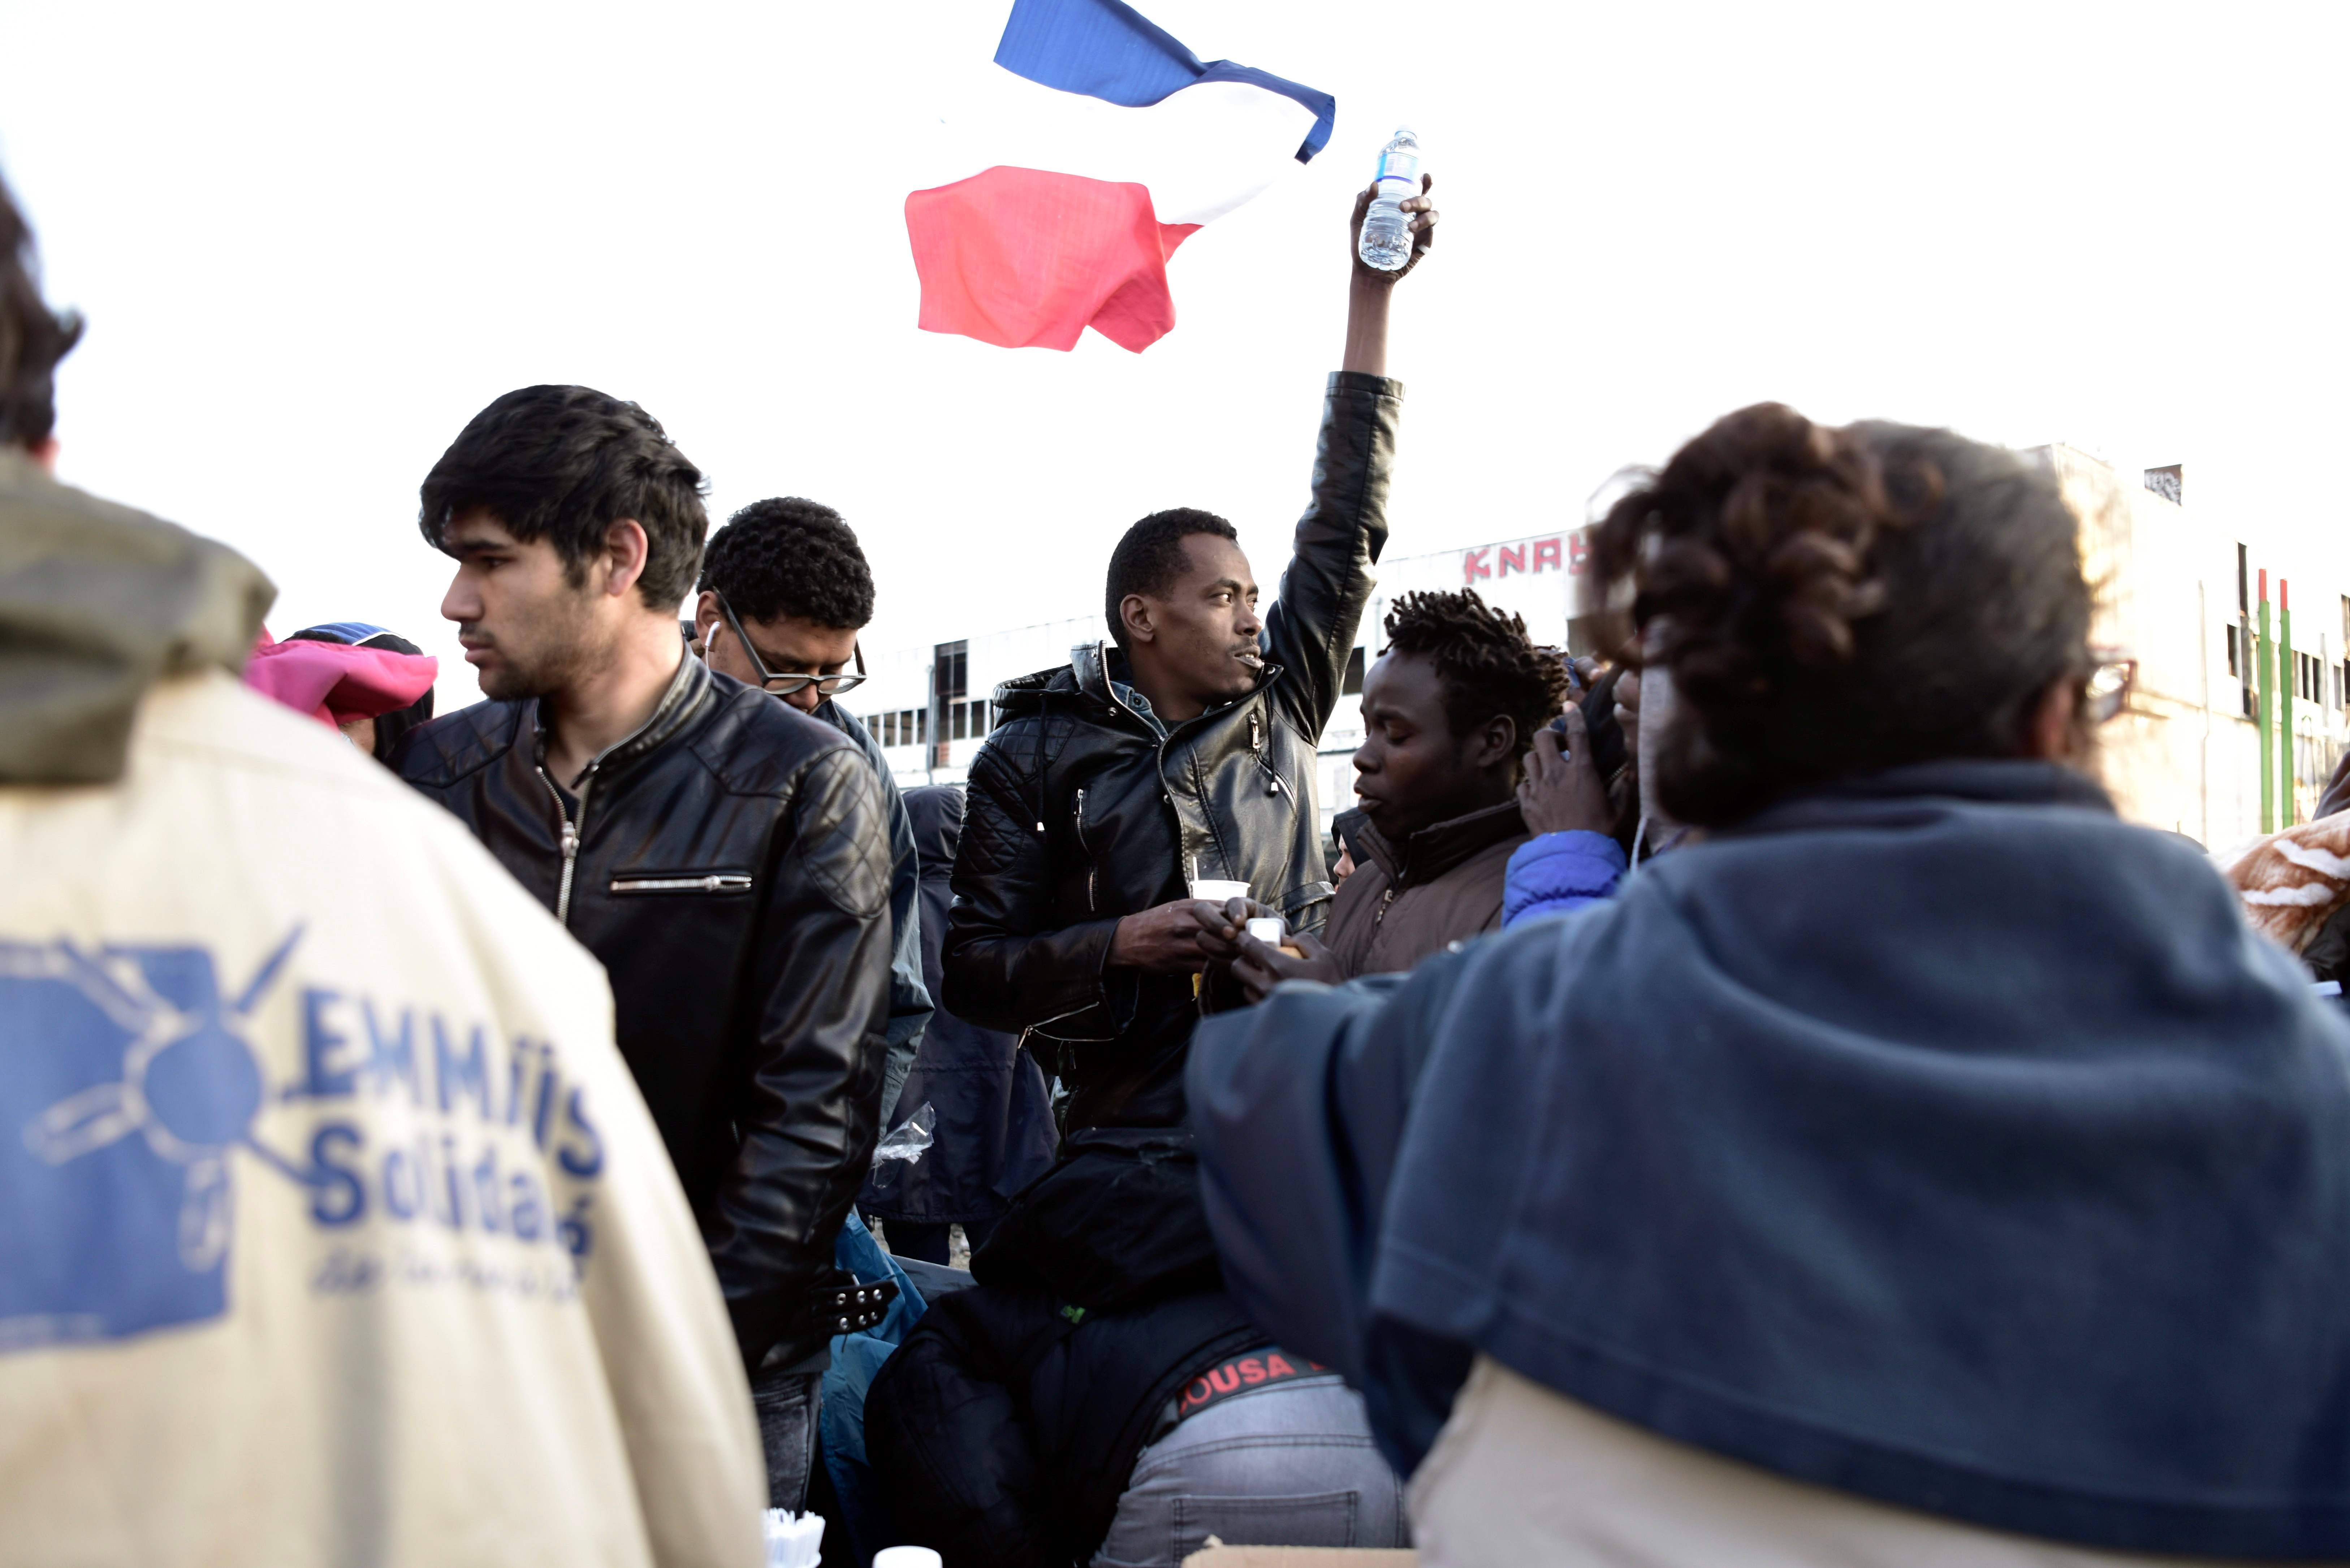 لاجئ يرفع علم فرنسا خلال اخلاء مخيم بباريس